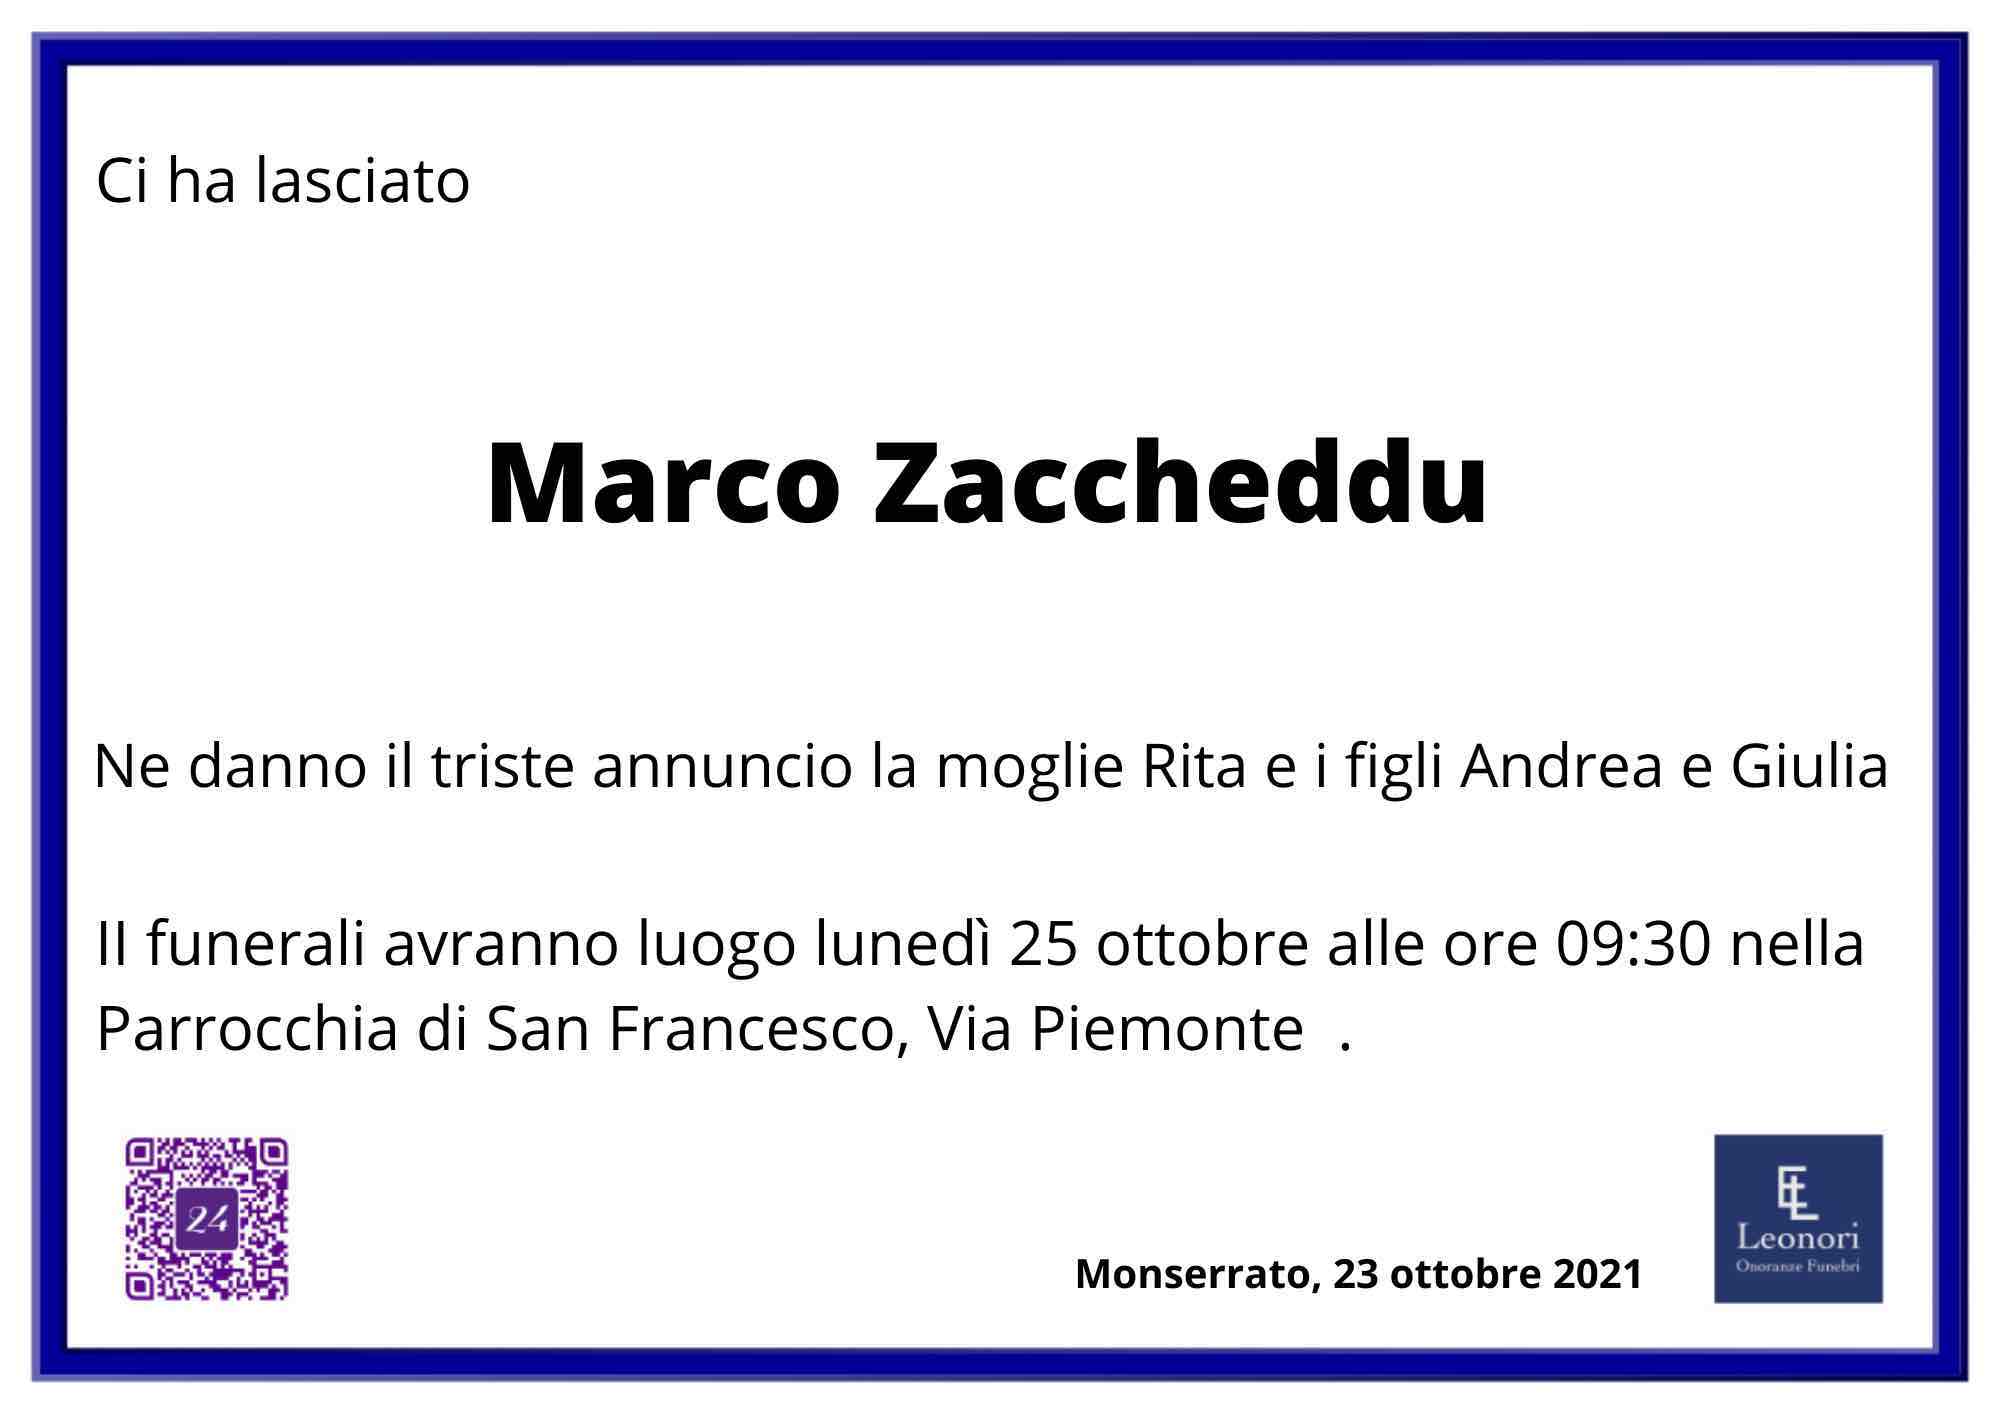 Marco Zaccheddu